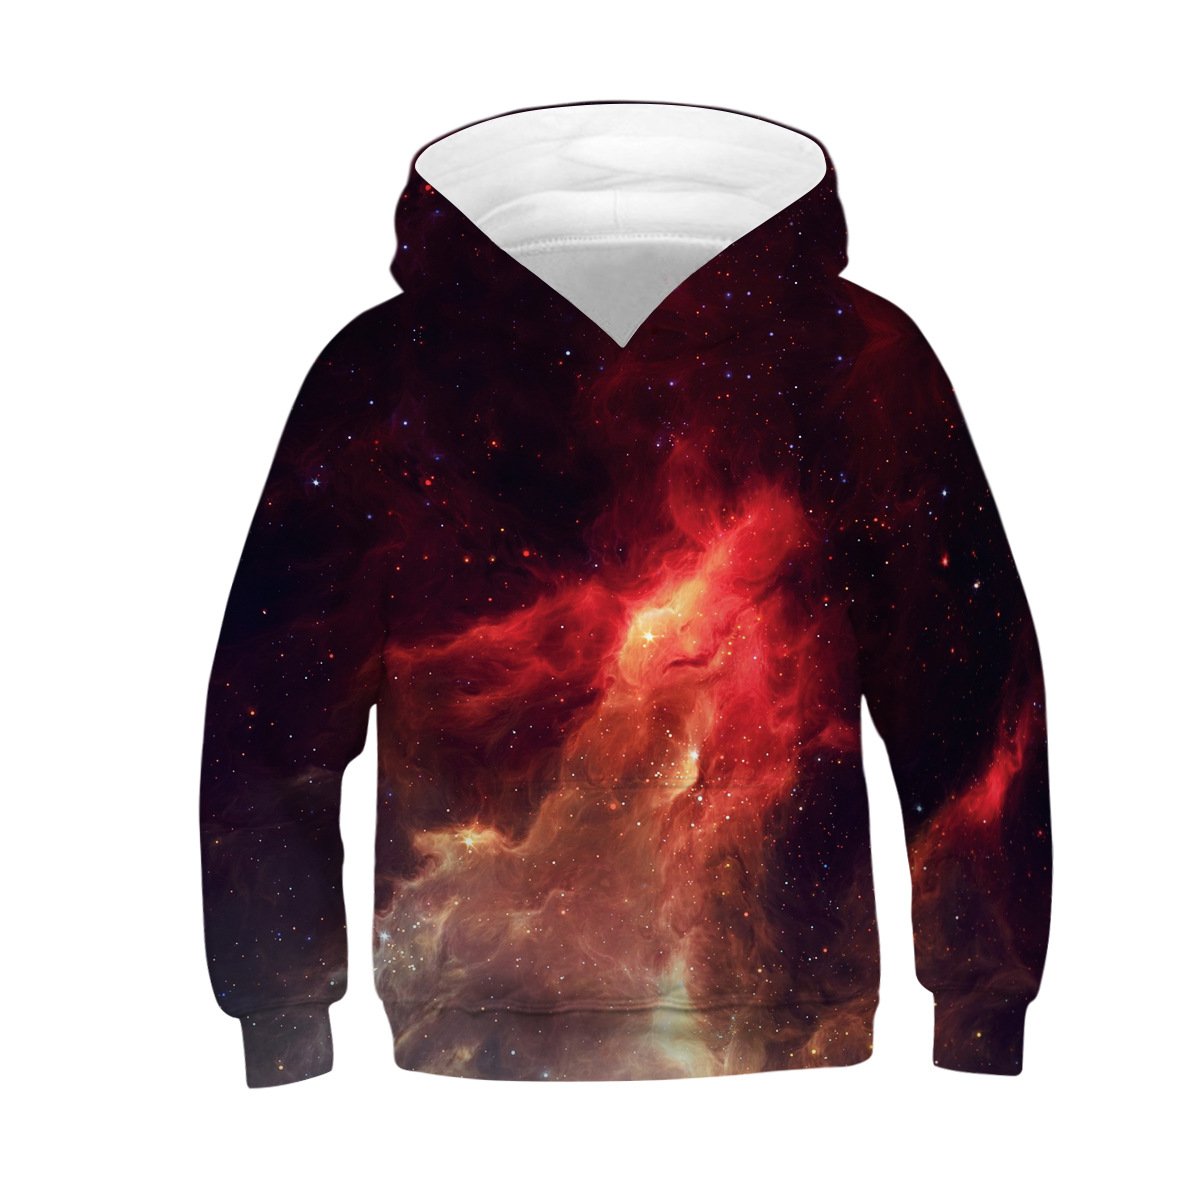 Unisex galaxy 3D Digital Print Pullover Hoodie Hooded Sweatshirt for boys and girls - mihoodie